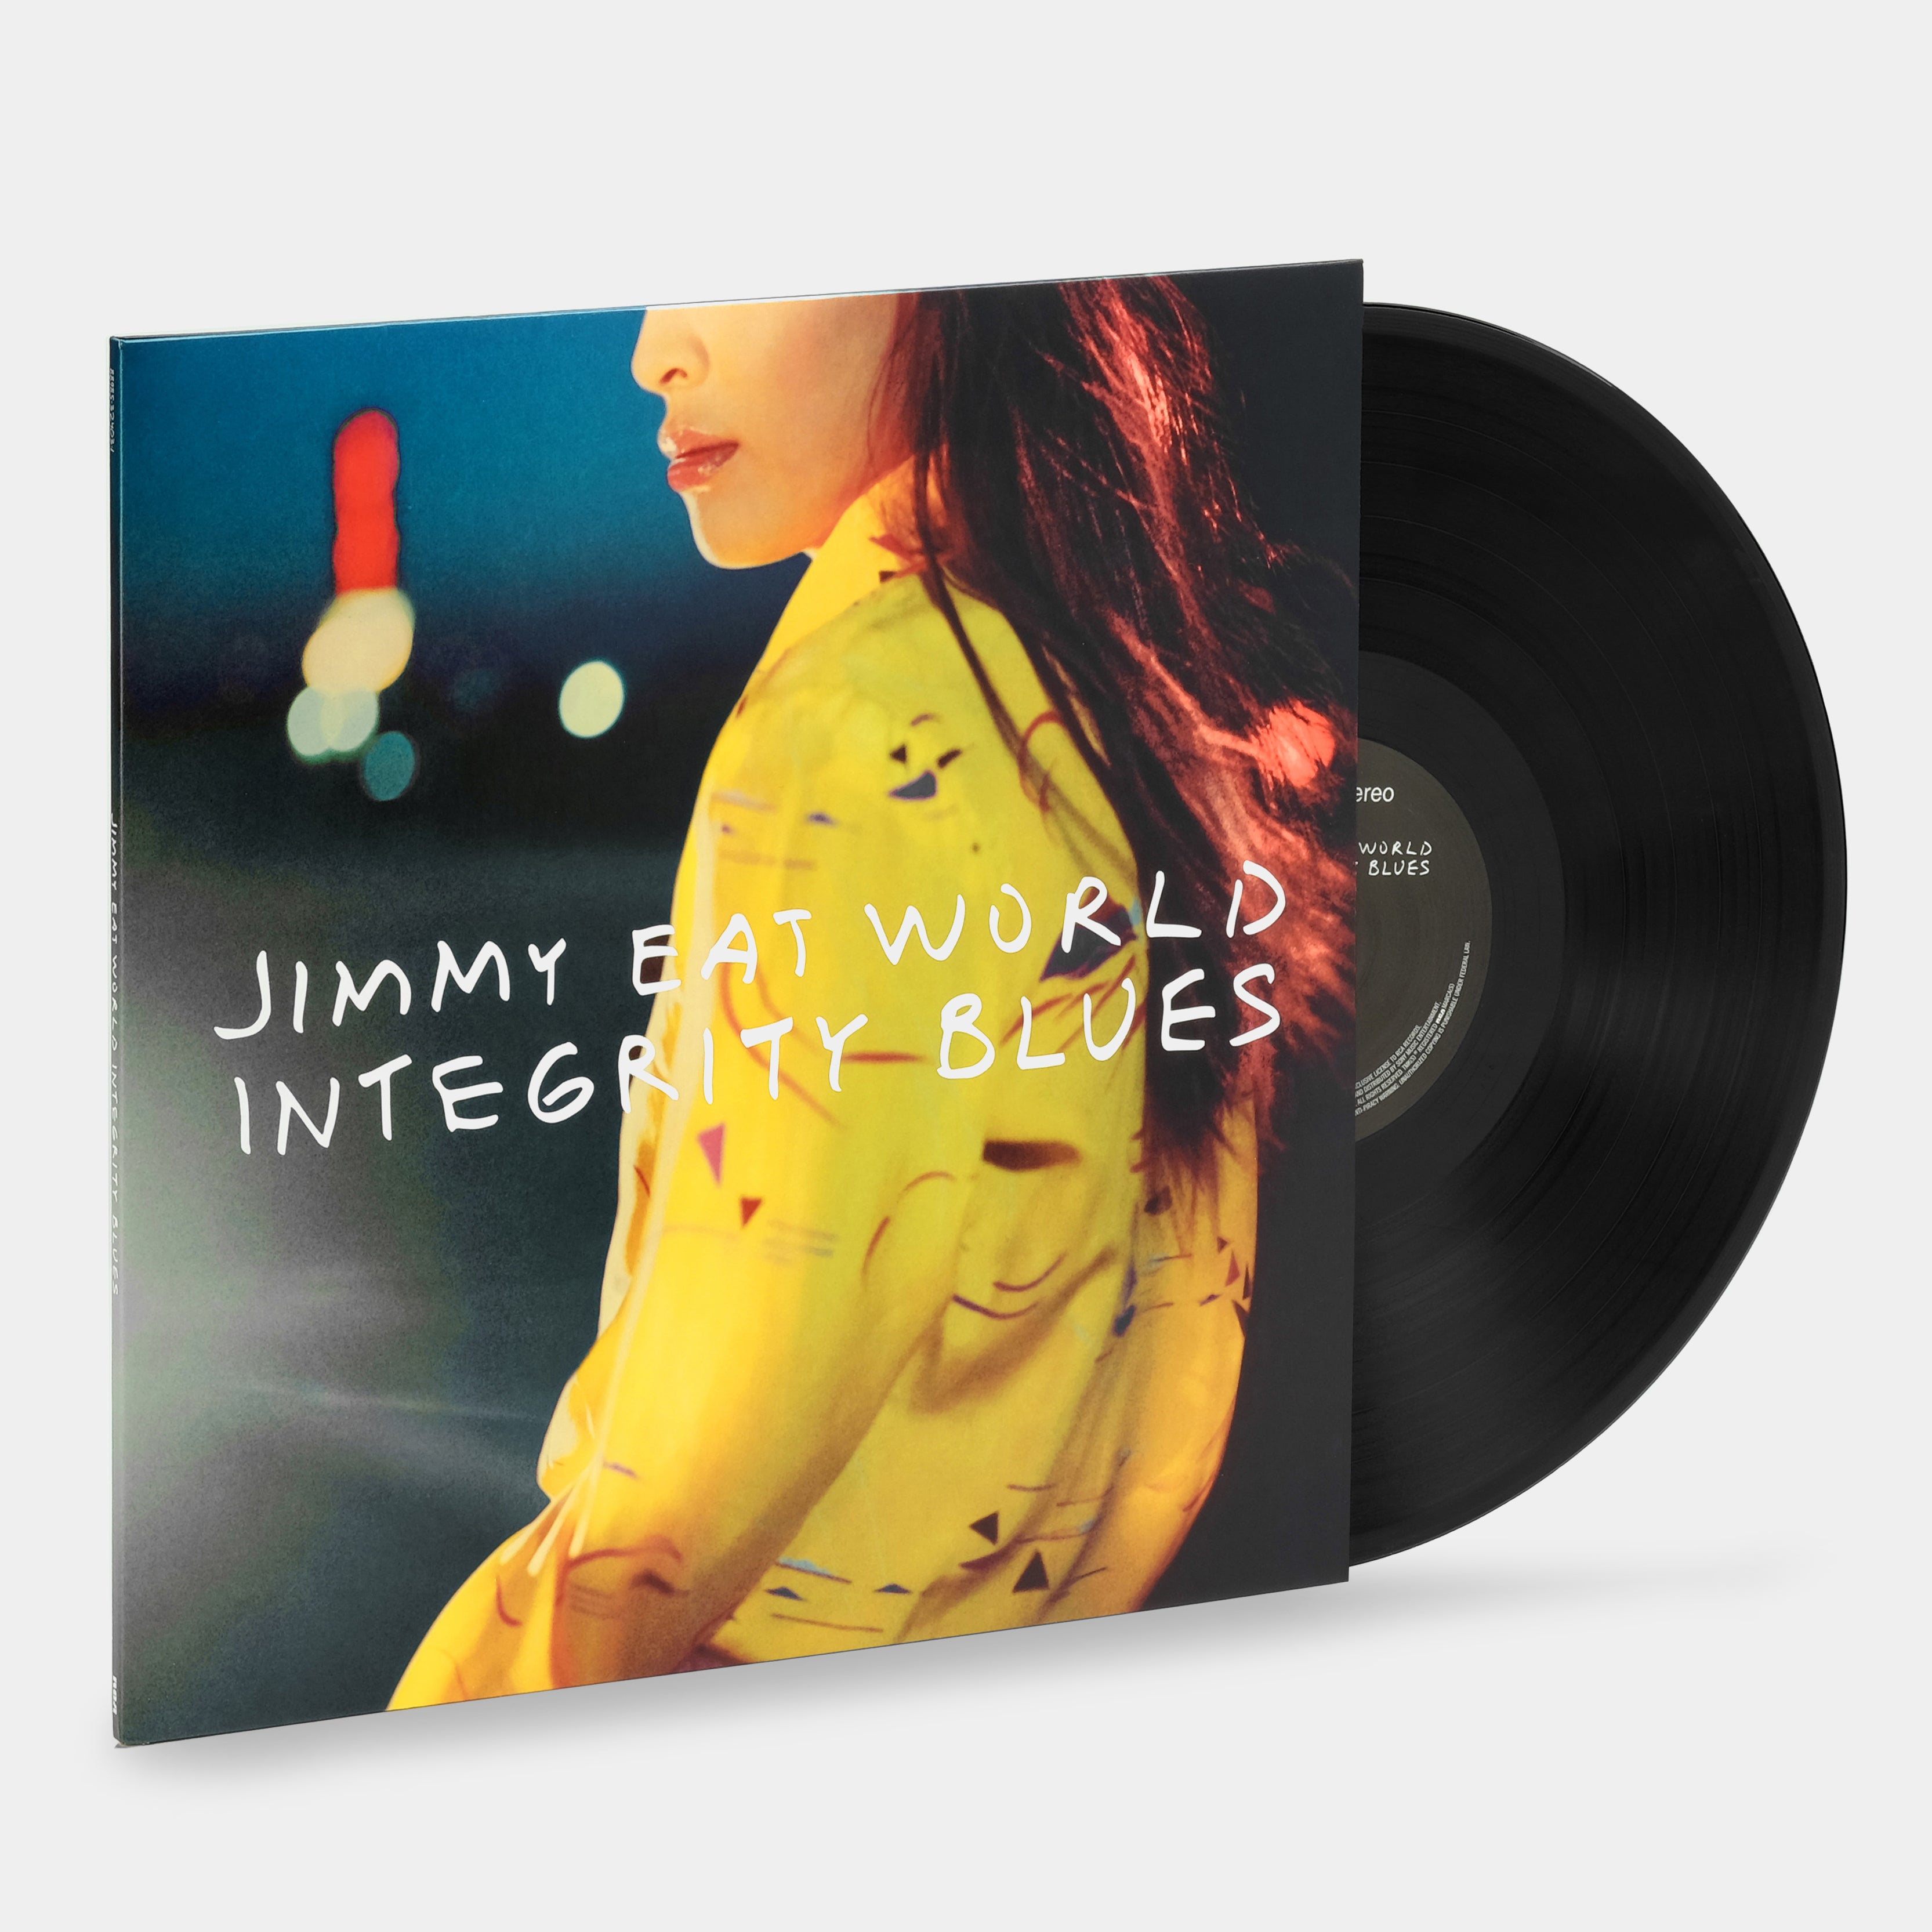 Jimmy Eat World - Integrity Blues LP Vinyl Record